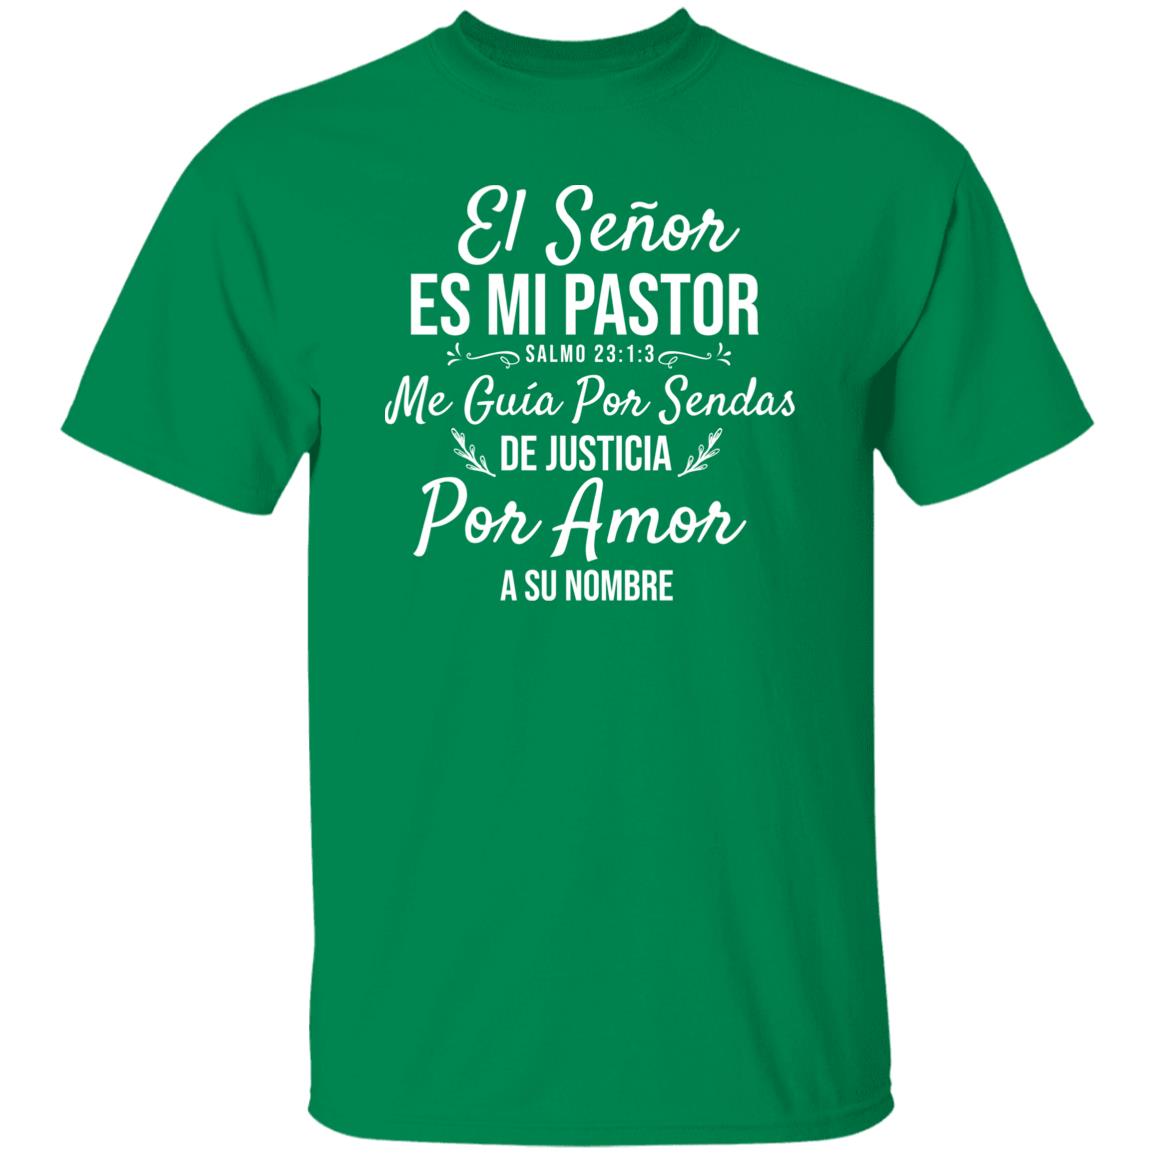 El Señor es mi Pastor